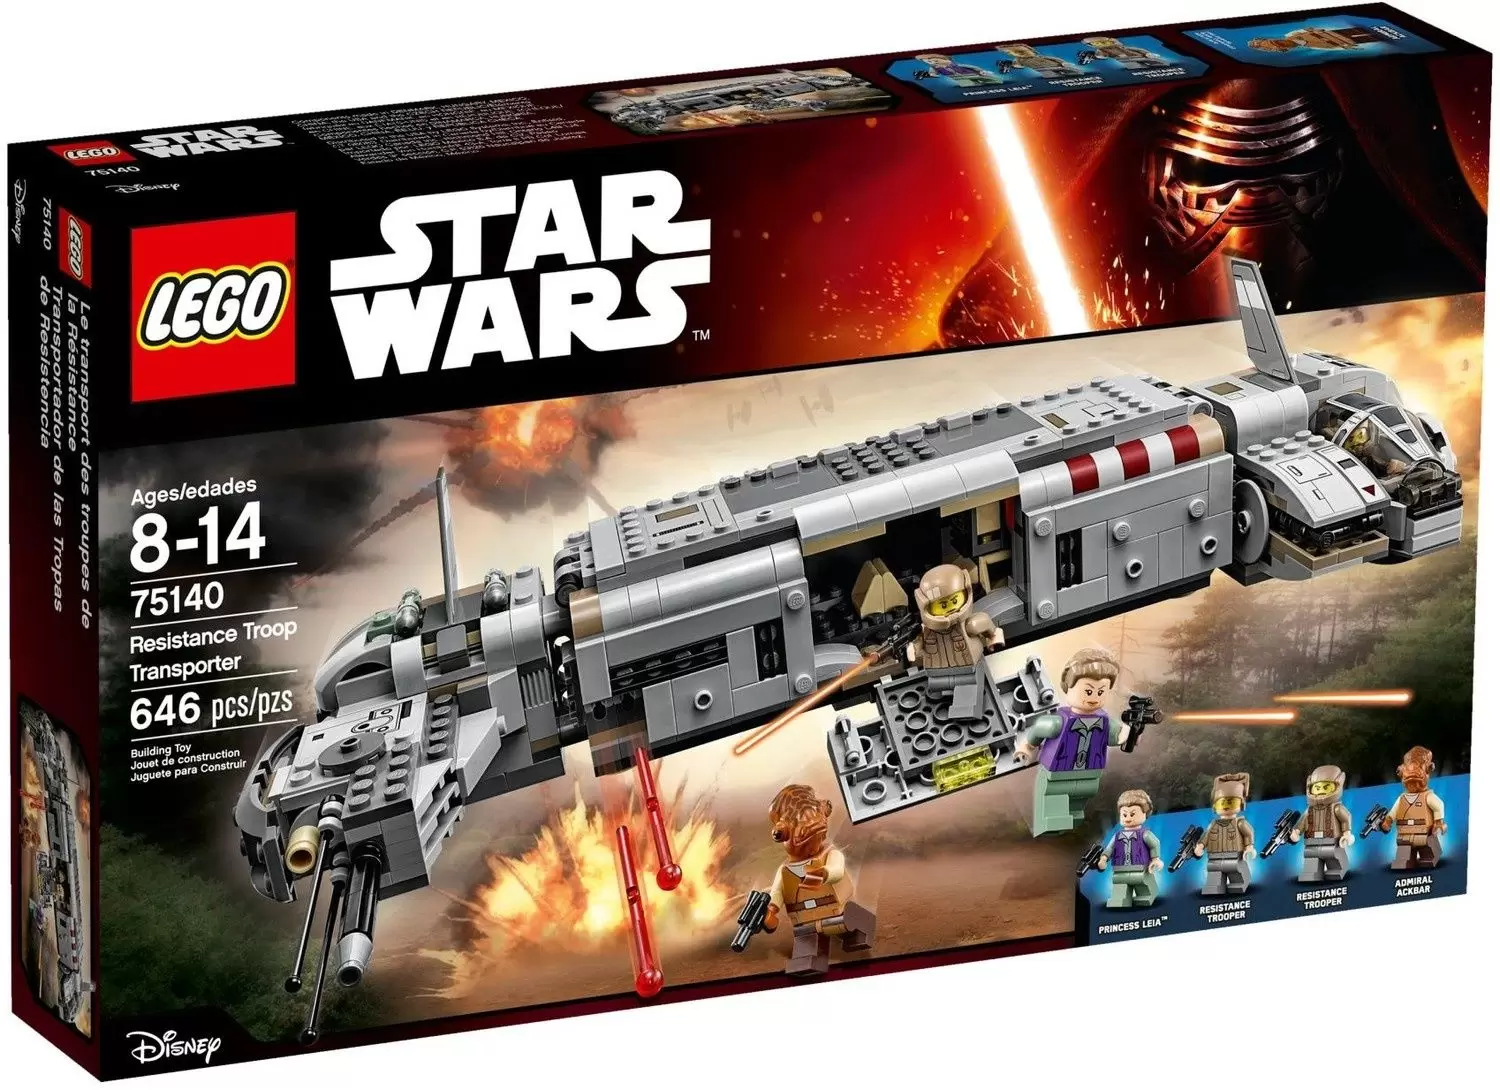 LEGO Star Wars - Resistance Troop Transporter